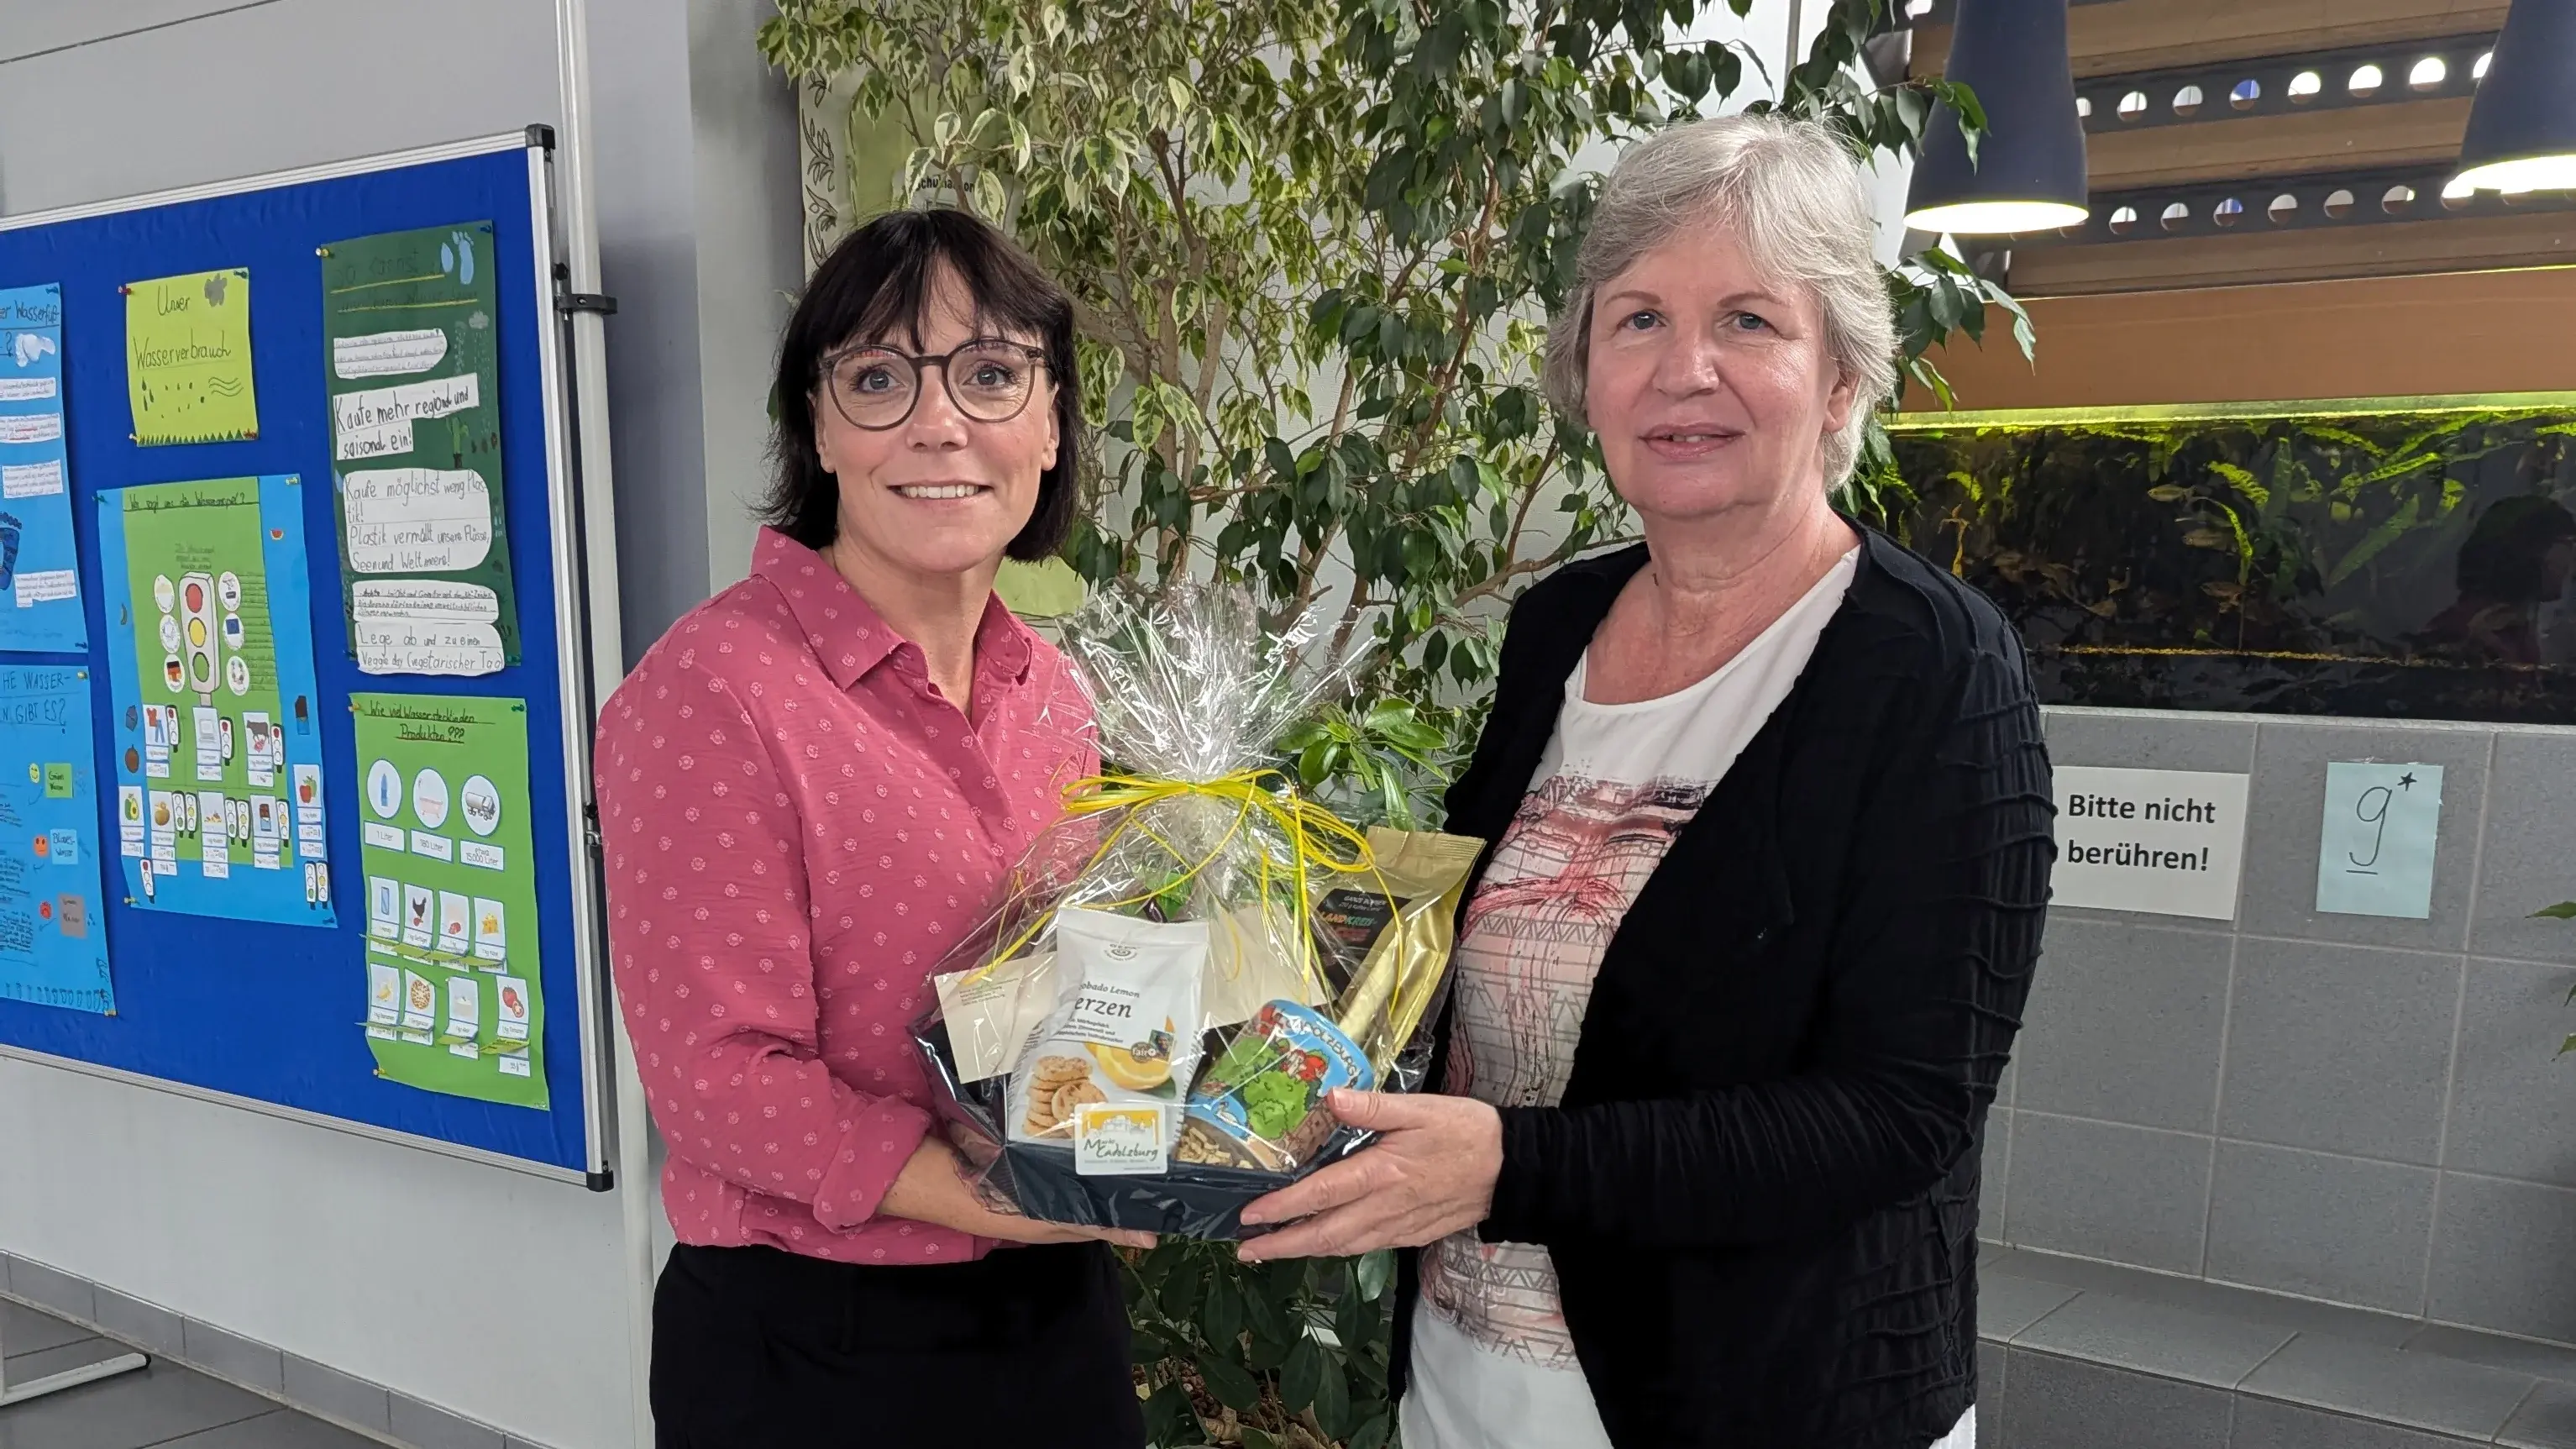 Bürgermeisterin Sarah Höfler übergibt Geschenk an Rektorin Frau Bürkel